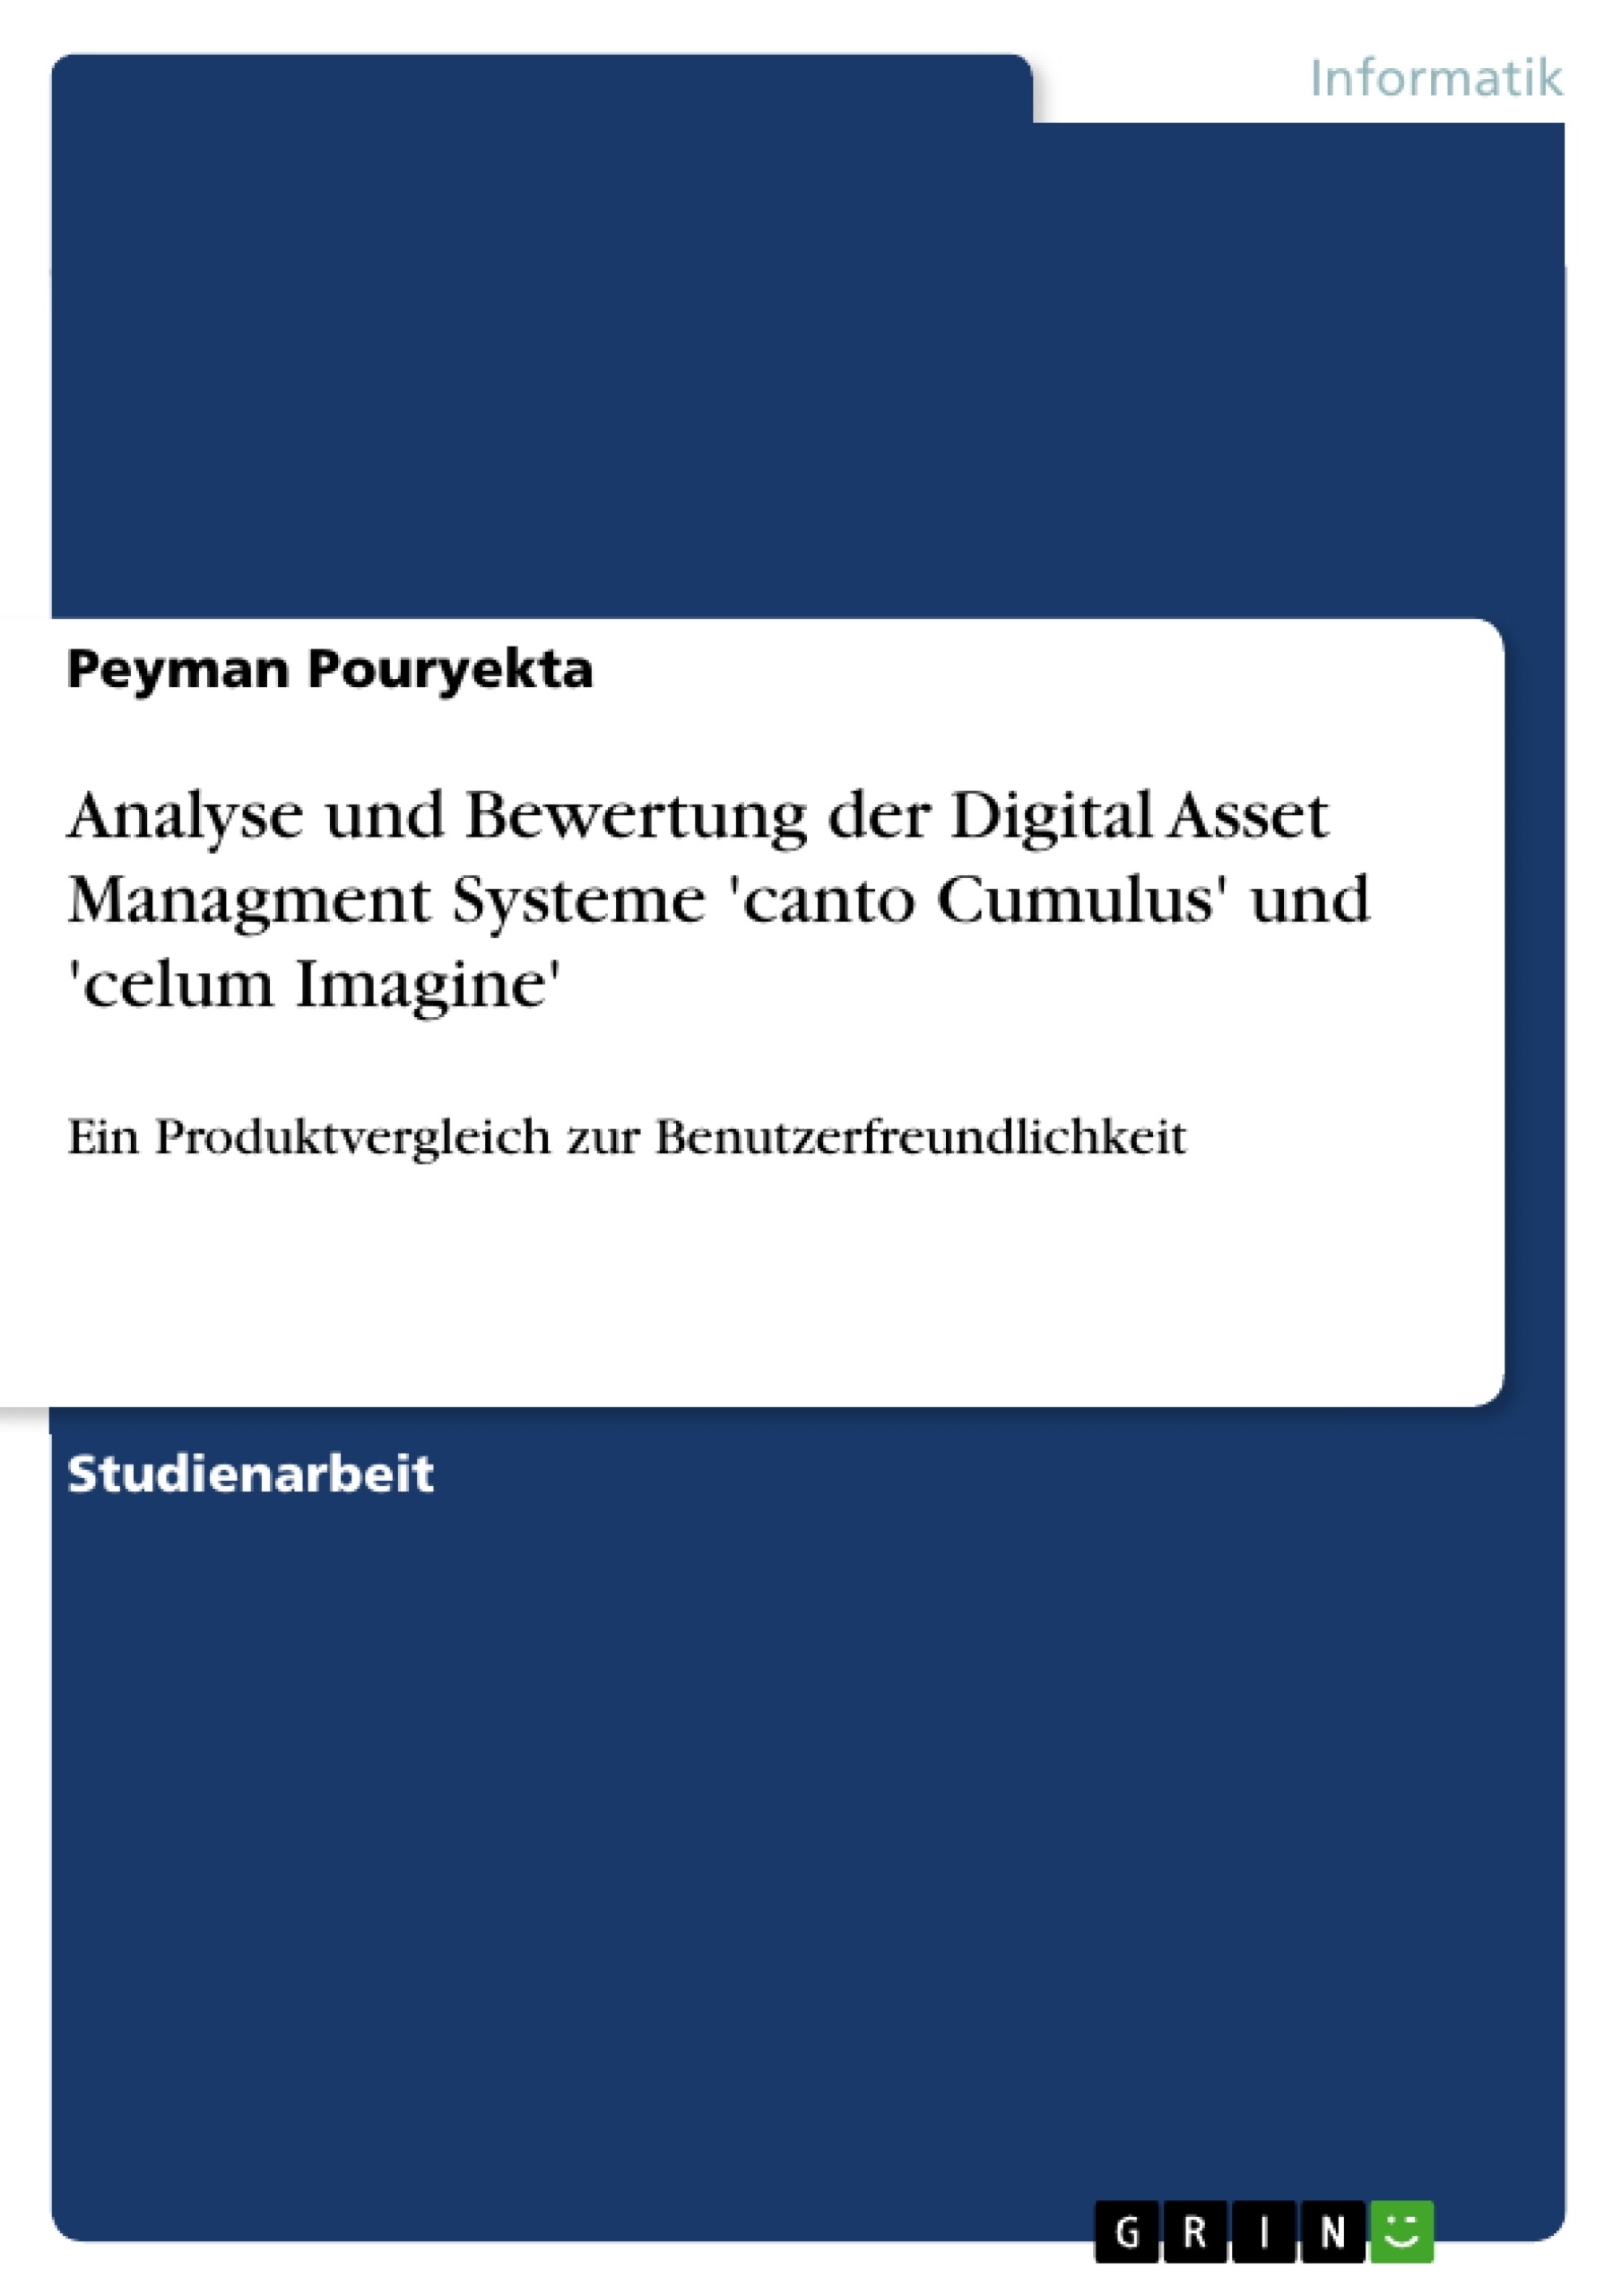 Title: Analyse und Bewertung der Digital Asset Managment Systeme 'canto Cumulus' und 'celum Imagine'